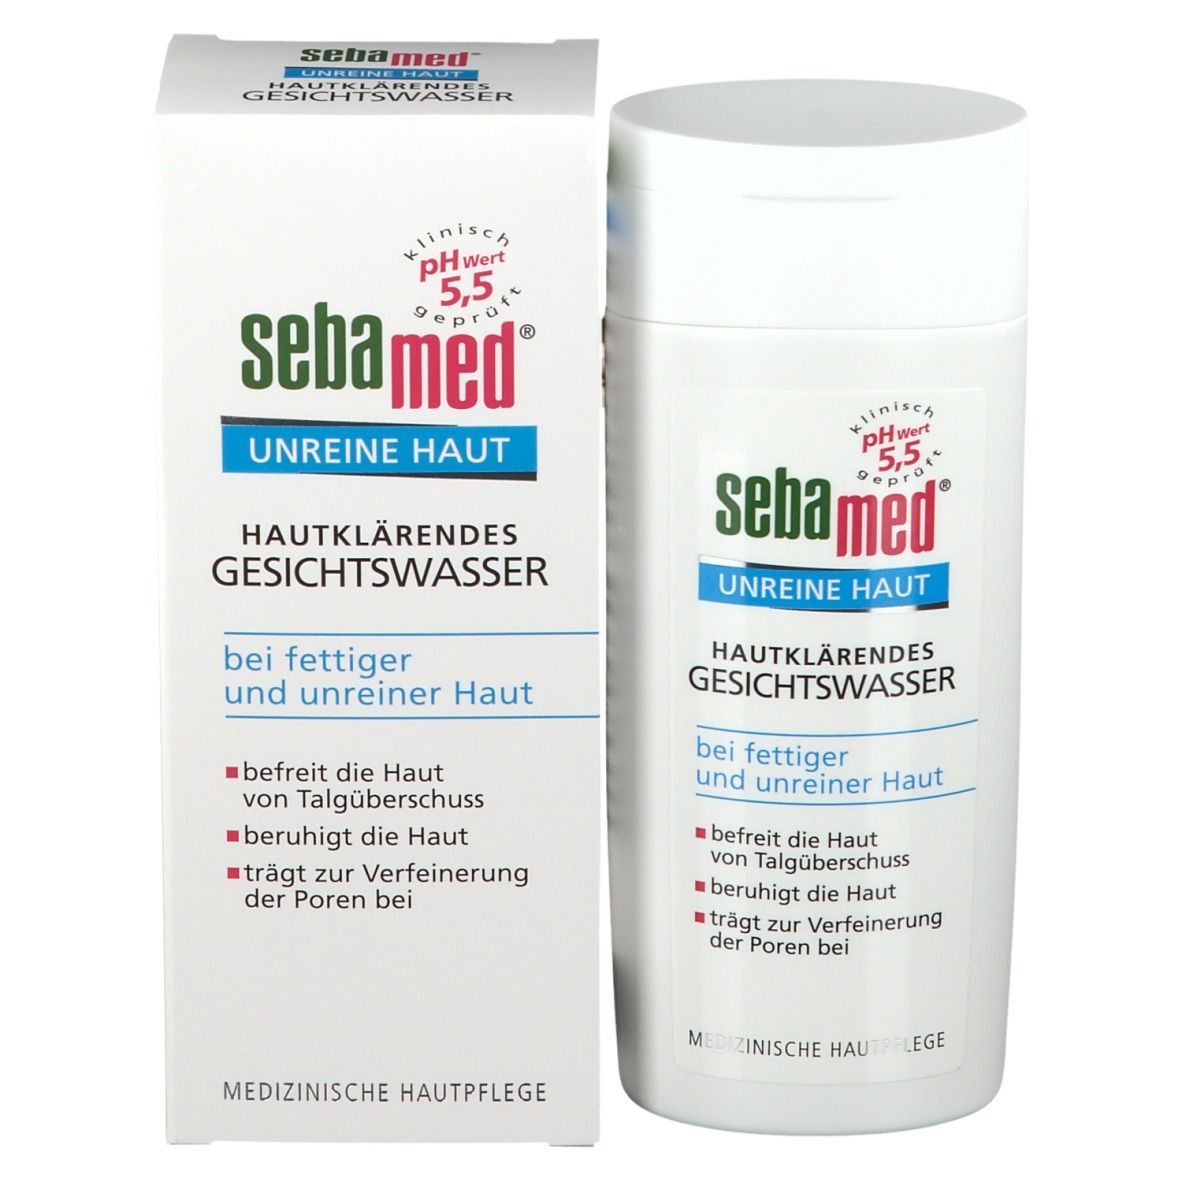 sebamed® Unreine Haut Hautklärendes Gesichtswasser